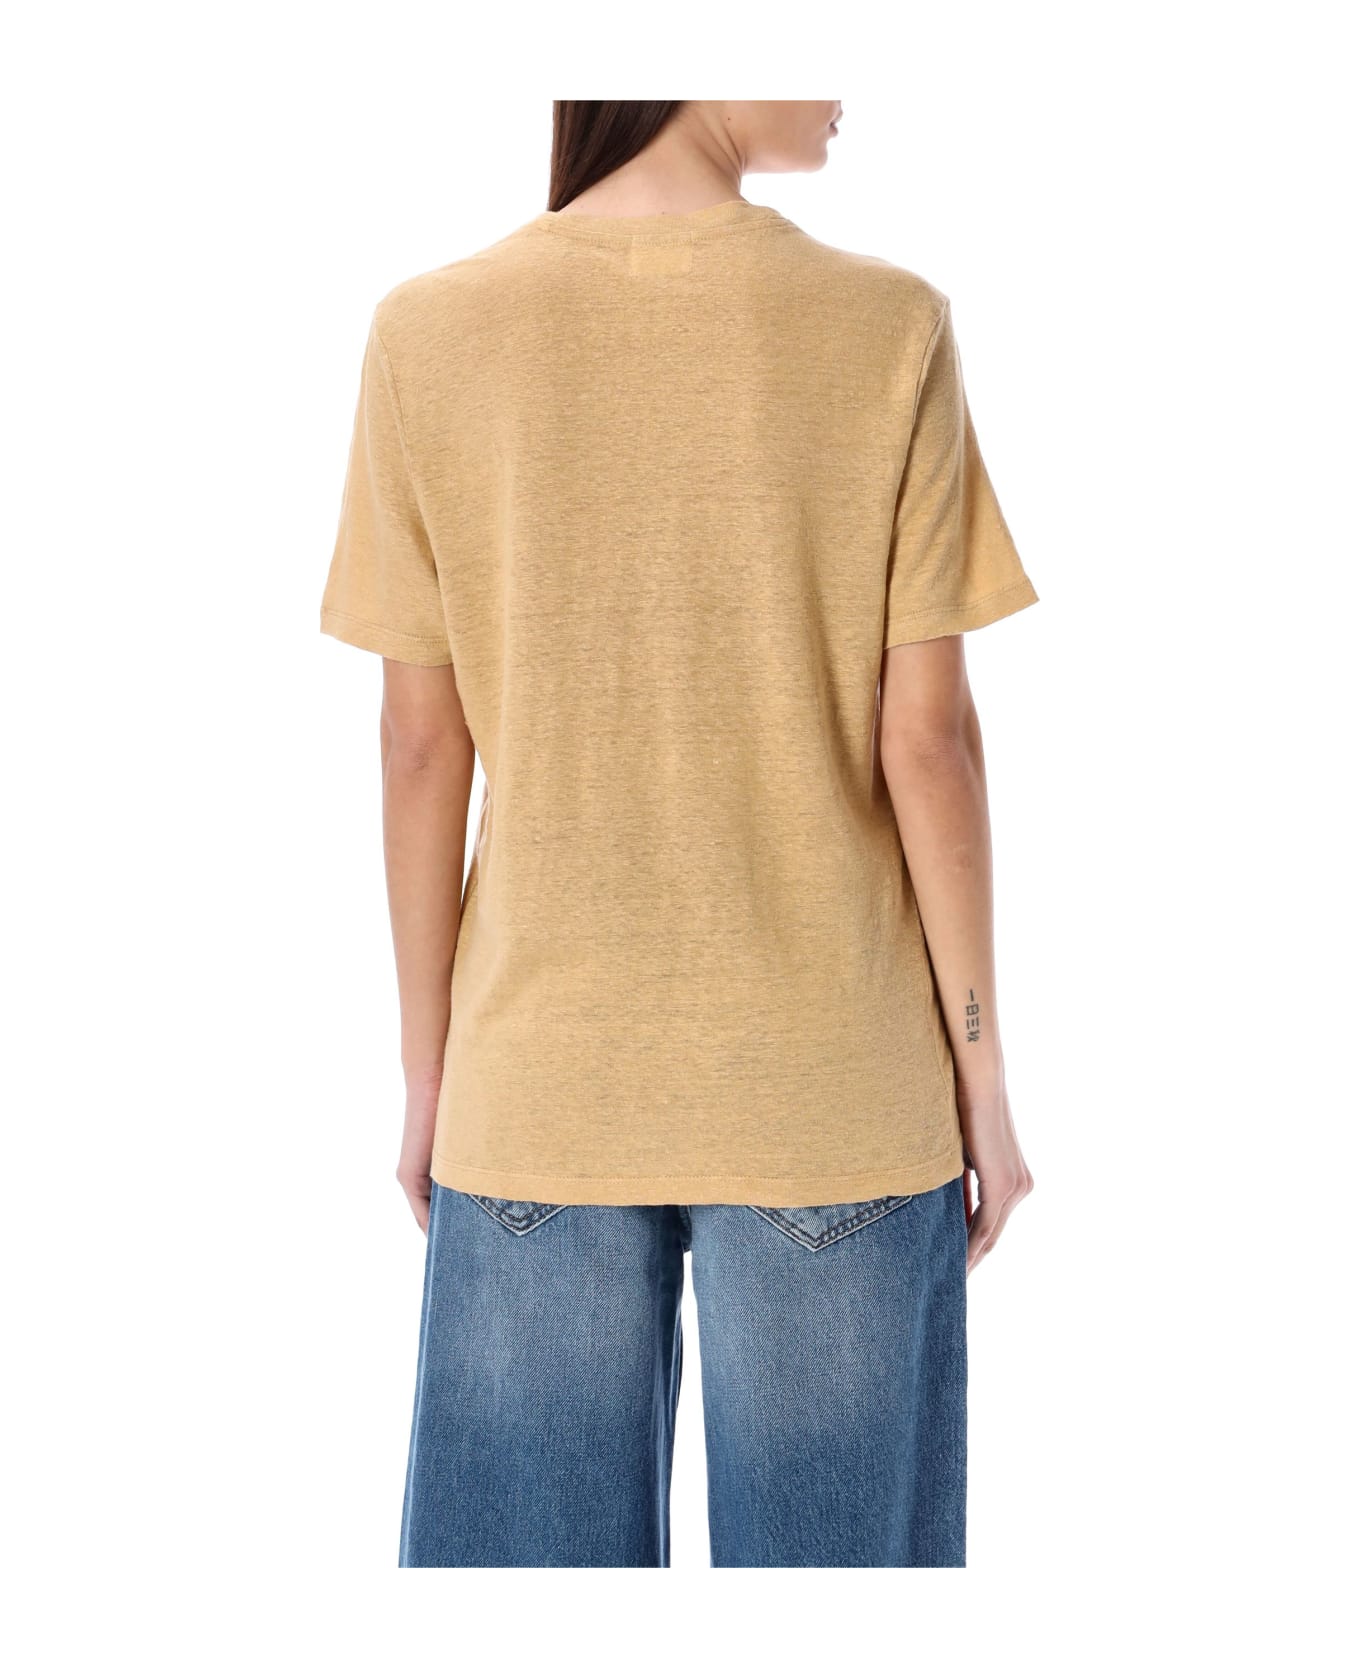 Marant Étoile Zewel T-shirt - SAHARA/LIGHT GOLD Tシャツ